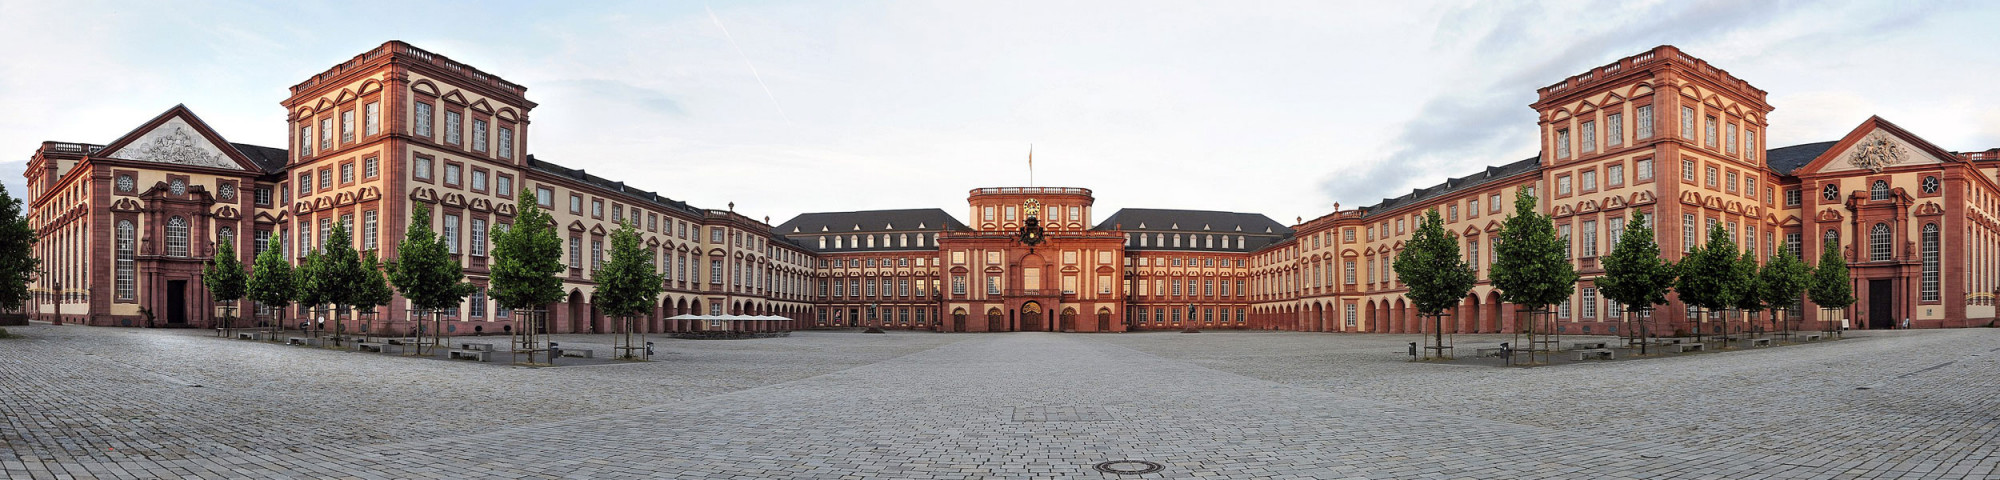 Mannheim gegen Sexkauf - Mannheimer Schloss